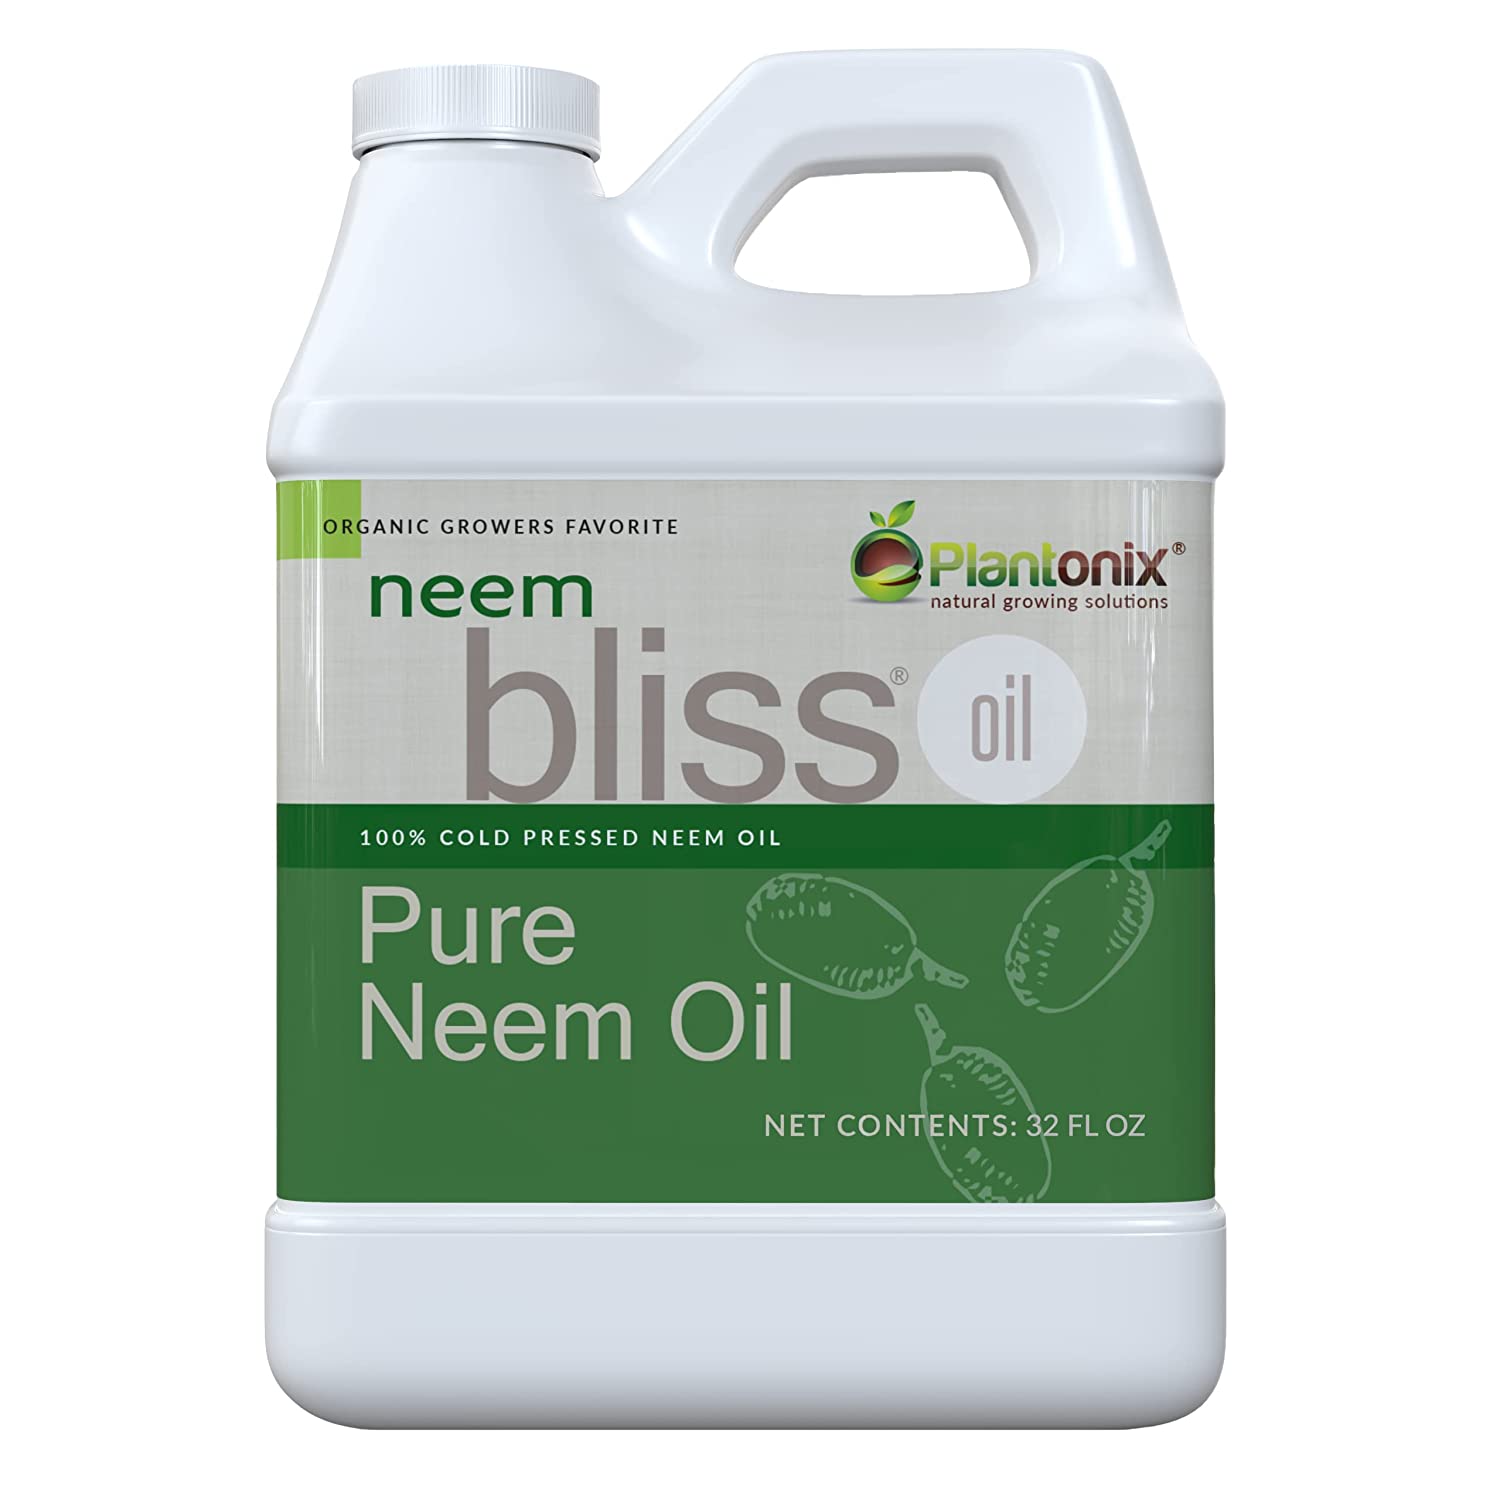 Amazon's bestseller: Neem Bliss Pure Neem Oil